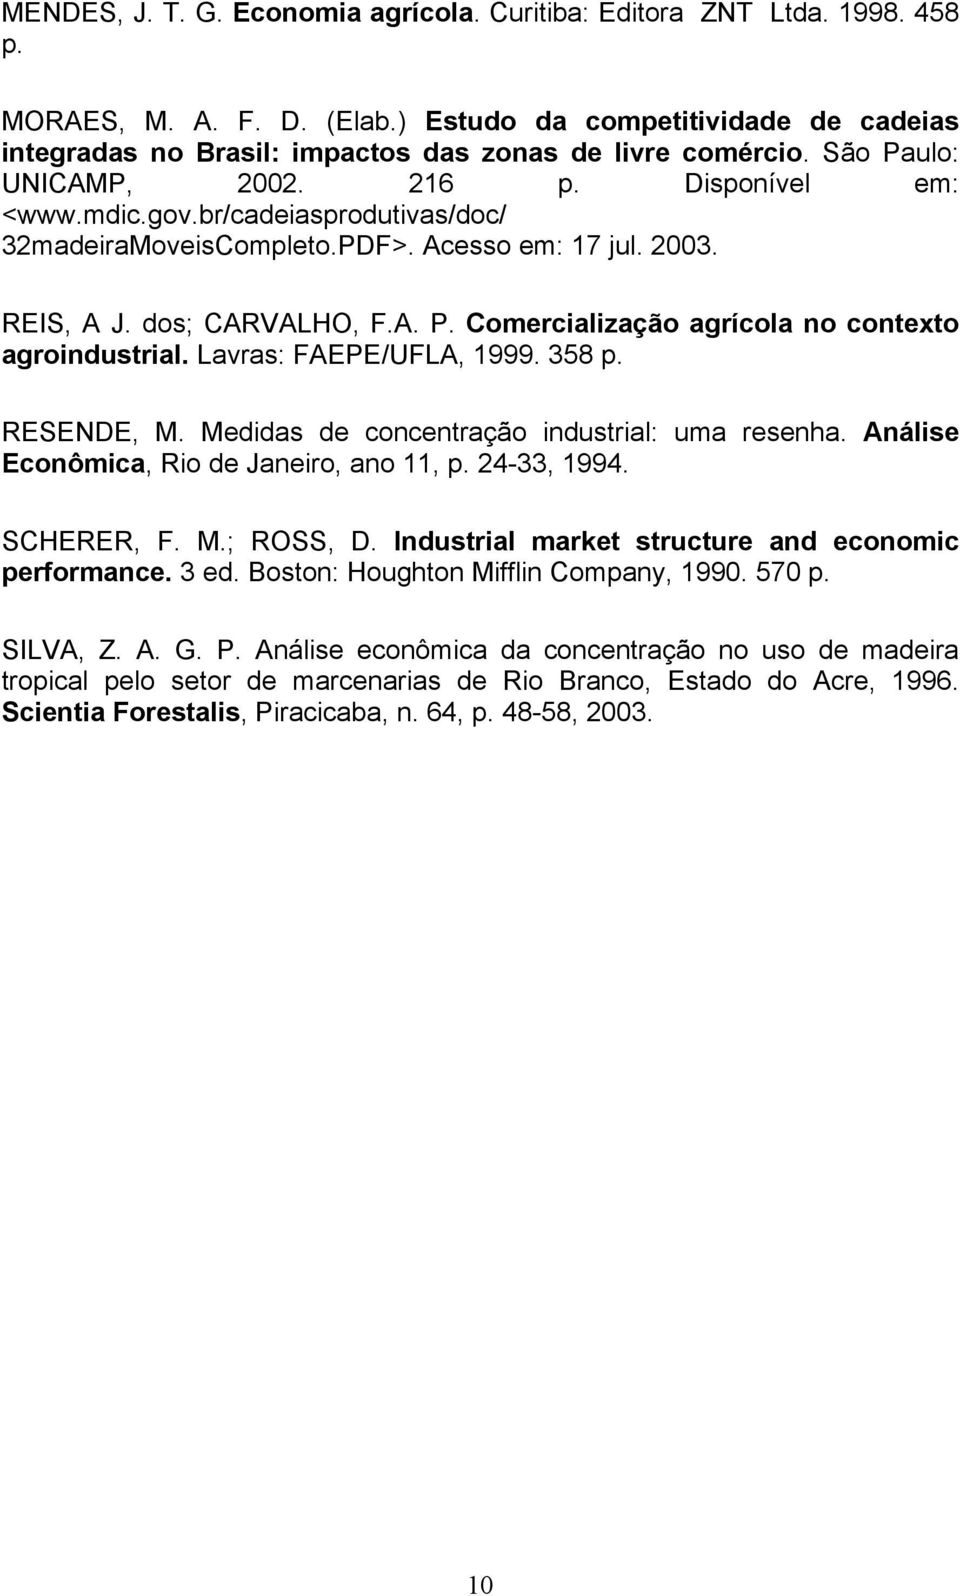 br/cadeiasprodutivas/doc/ 32madeiraMoveisCompleto.PDF>. Acesso em: 17 jul. 2003. REIS, A J. dos; CARVALHO, F.A. P. Comercialização agrícola no contexto agroindustrial. Lavras: FAEPE/UFLA, 1999. 358 p.